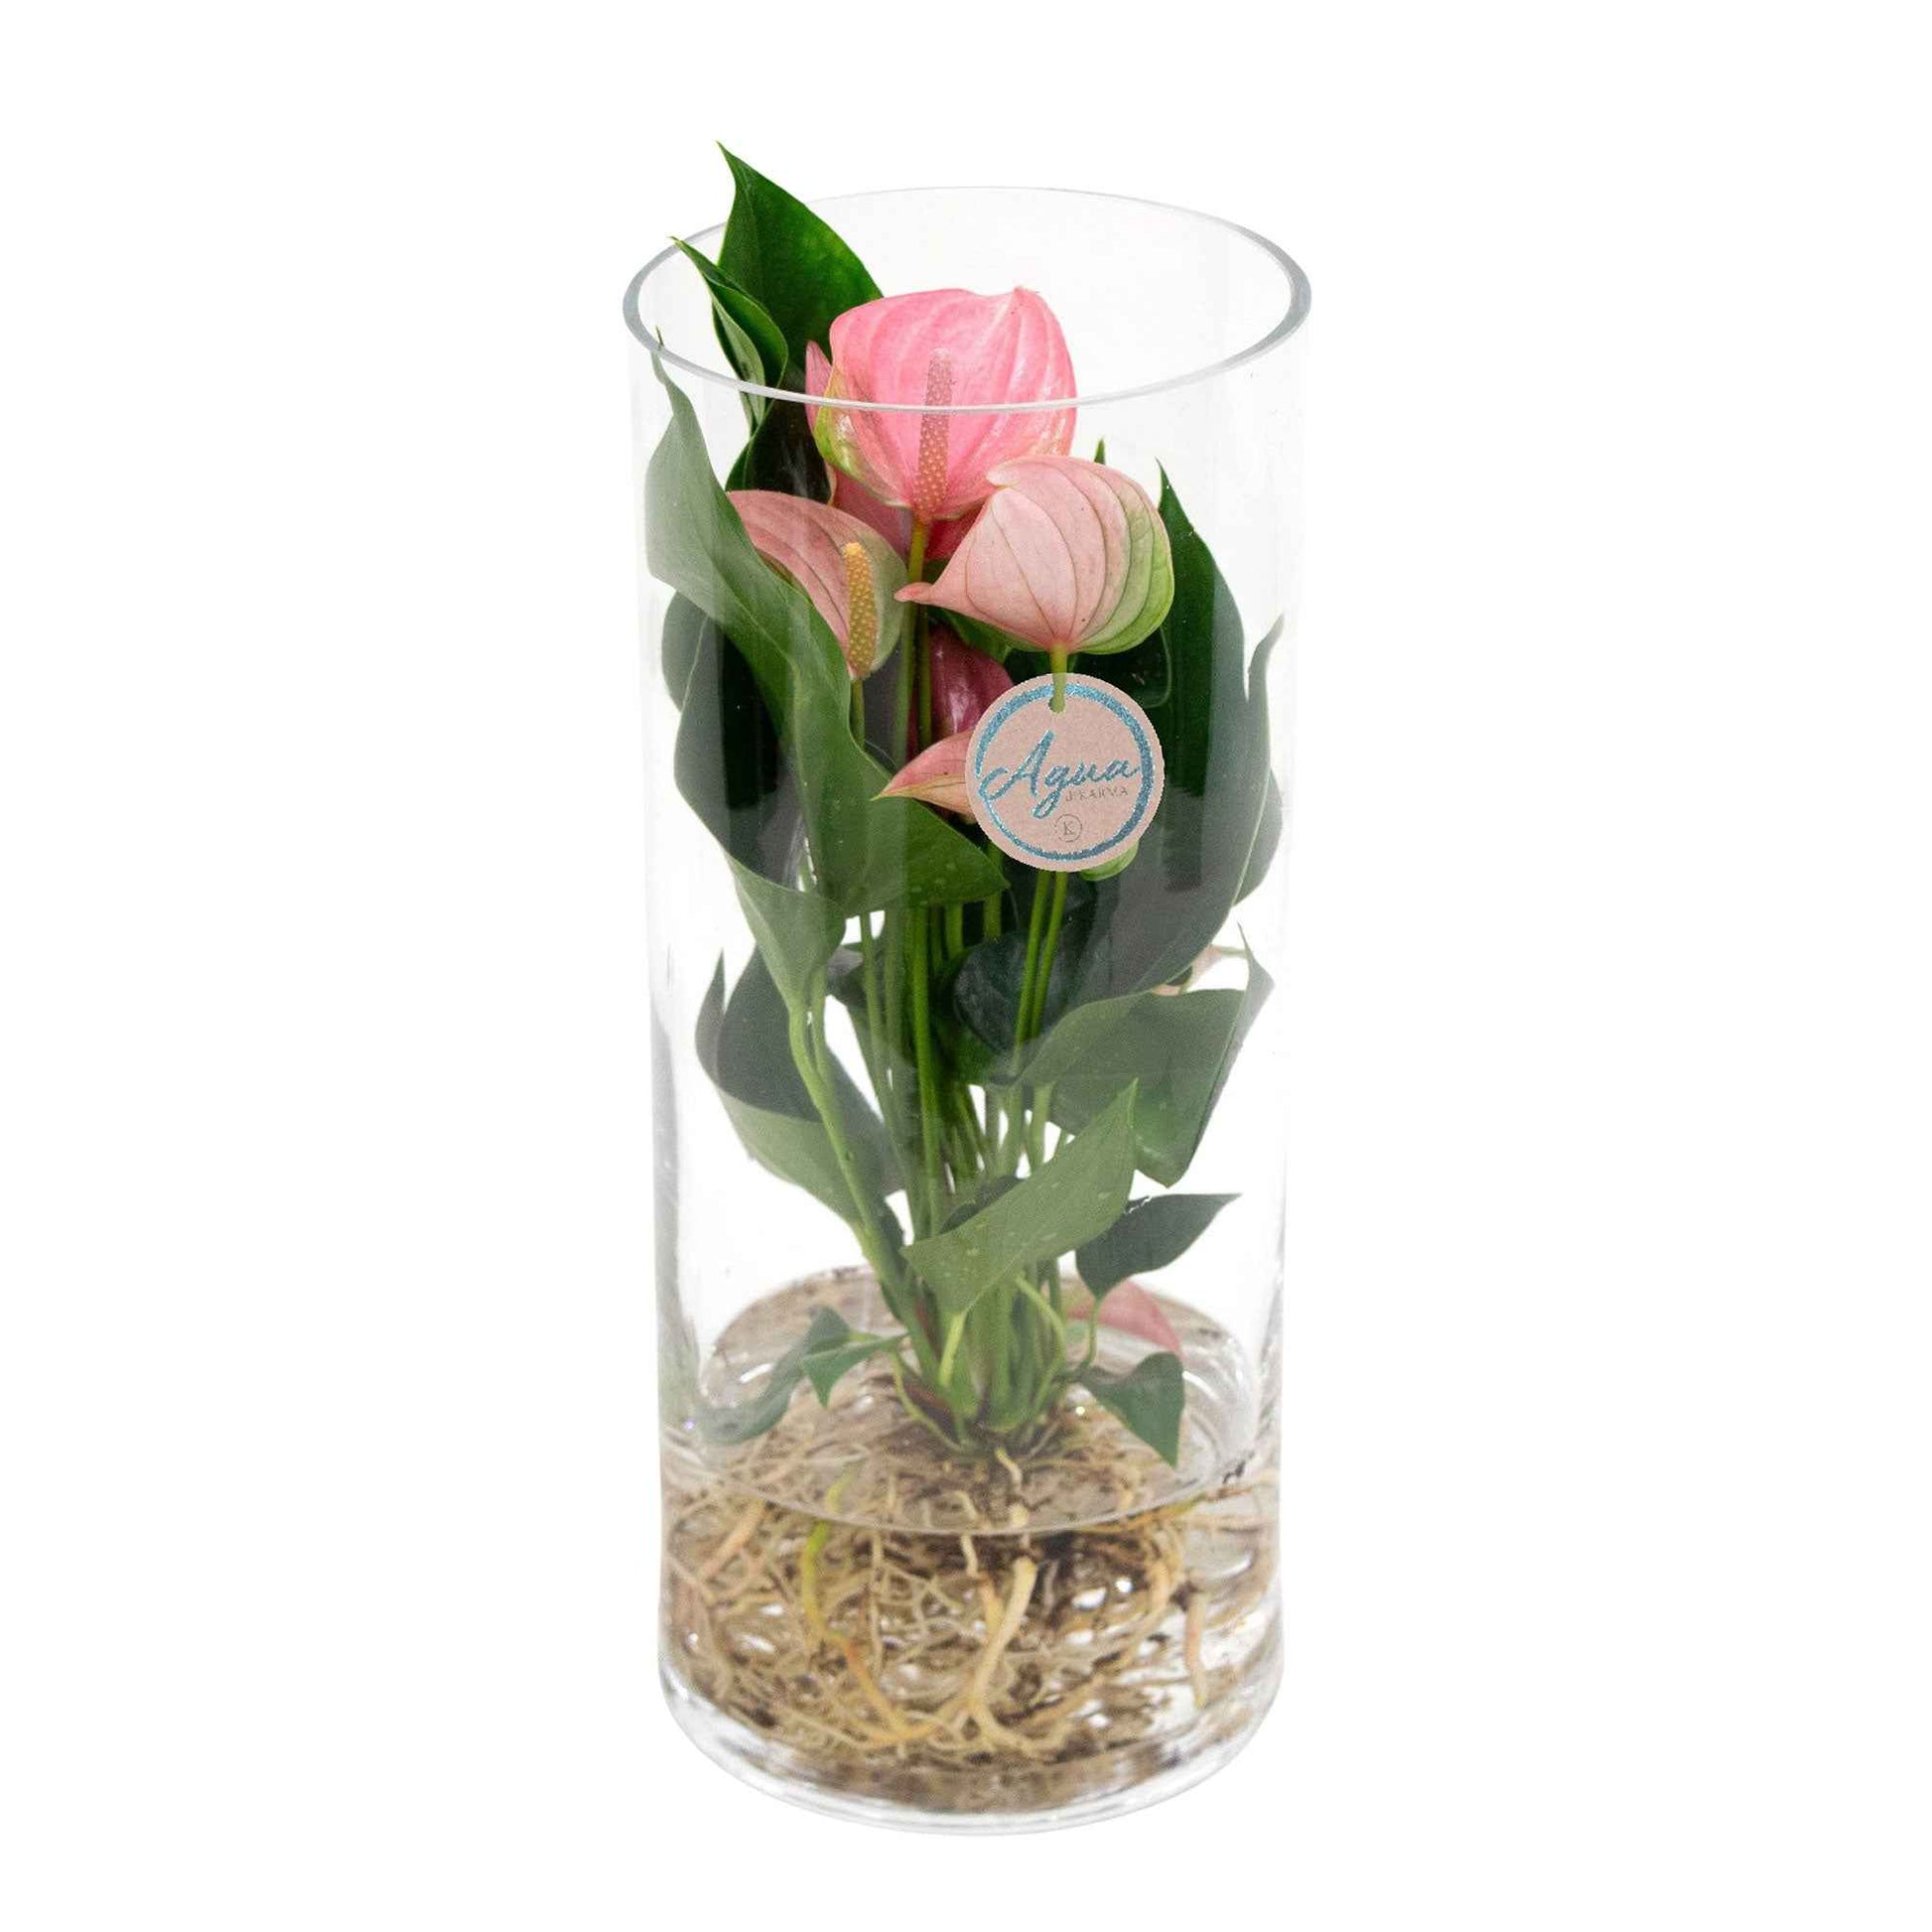 Langue de feu Anthurium 'Joli Pink' Rose avec cache-pot en verre - Idées cadeaux